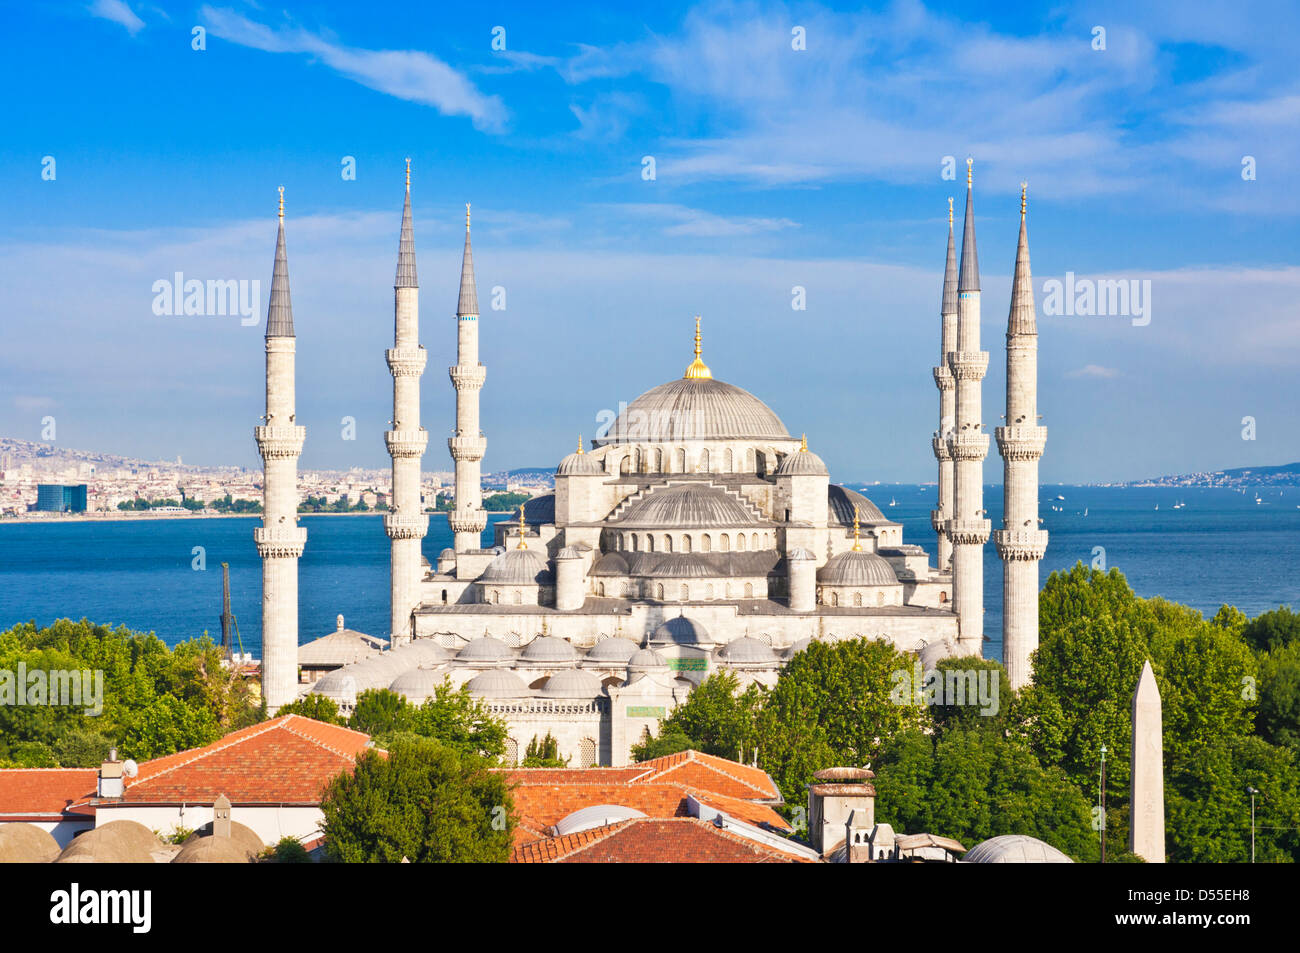 La Mosquée Bleue ou la Mosquée Sultan Ahmed avec cinq dômes principaux, six minarets et huit petits dômes sur la ligne d'horizon d'Istanbul Sultanahmet, au centre d'Istanbul Banque D'Images